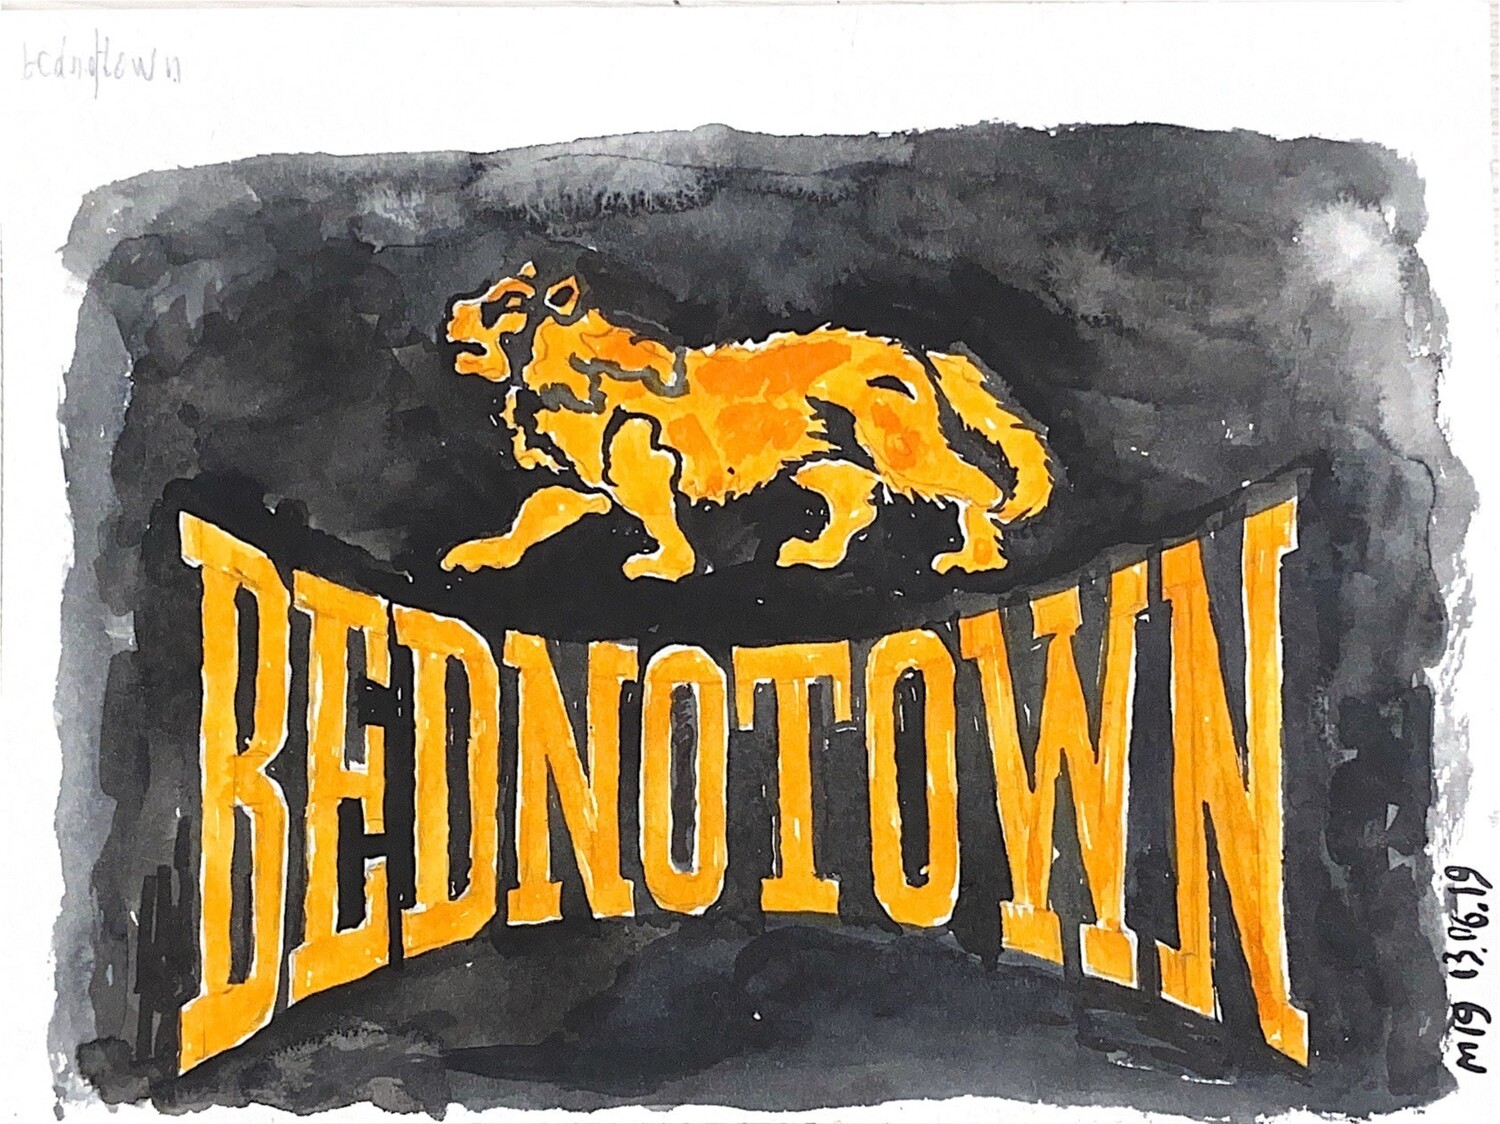 "Bednotown Fox"